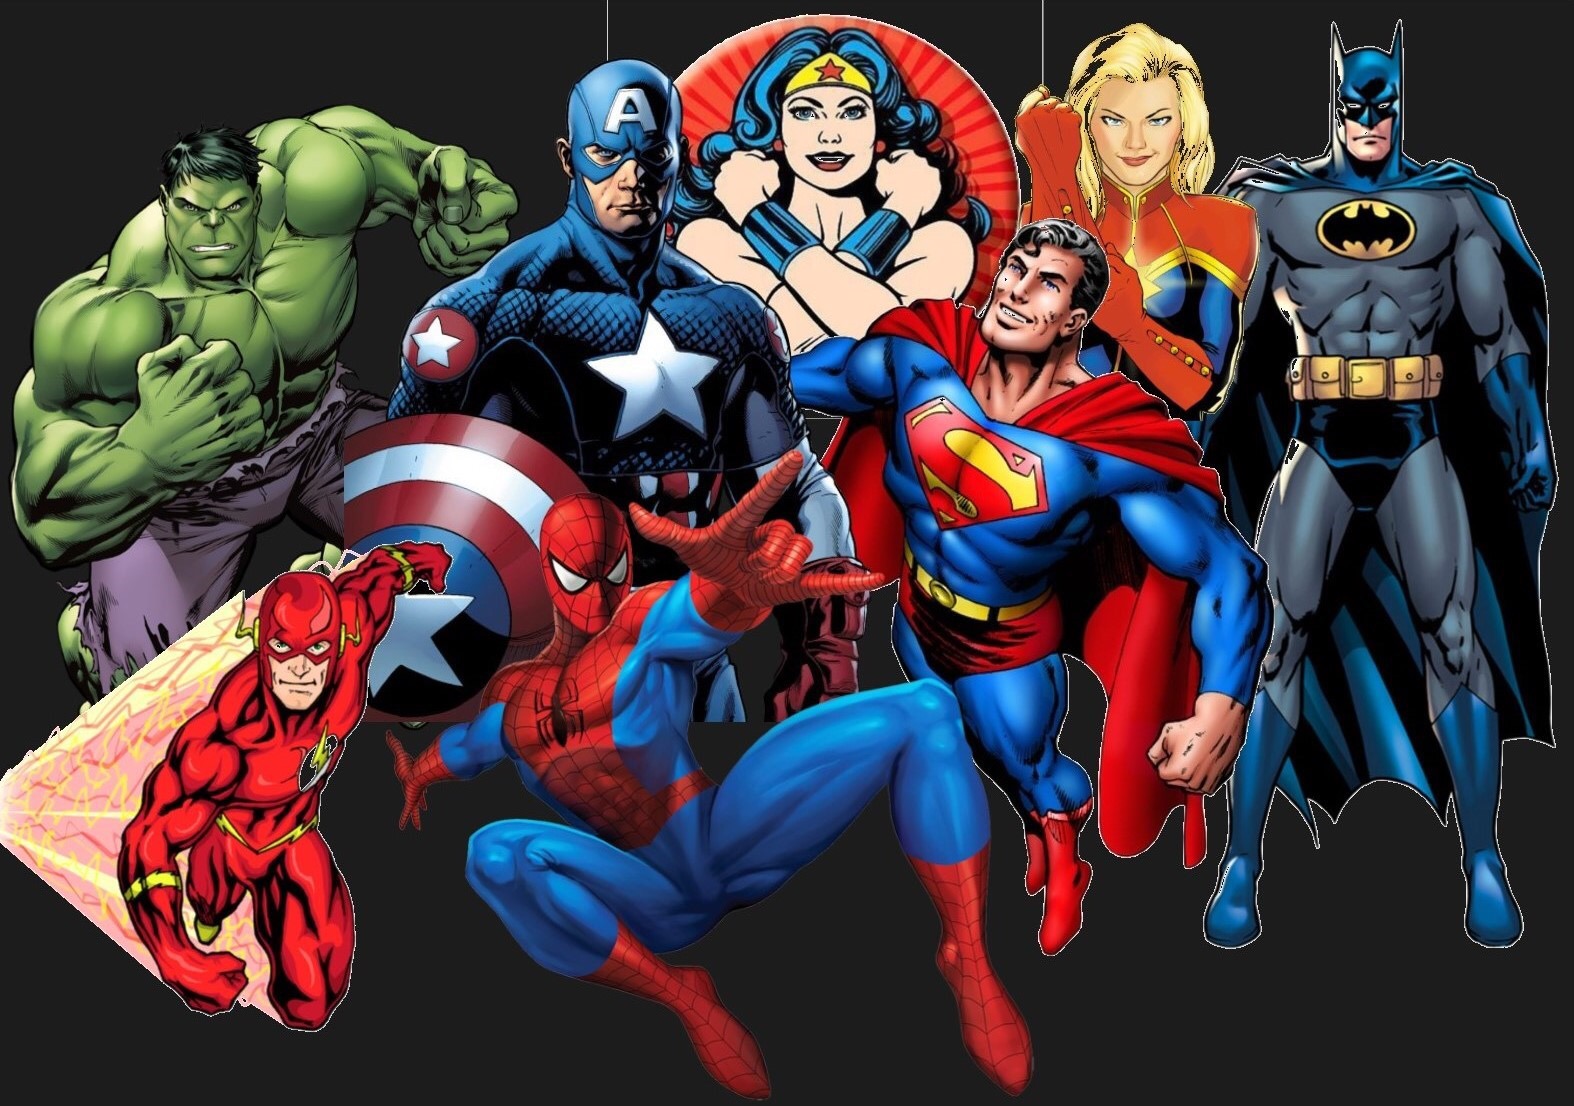 Cockham superheroes. Супергерои. Супергерои Марвел. Marvel герои. Картинки супергероев.